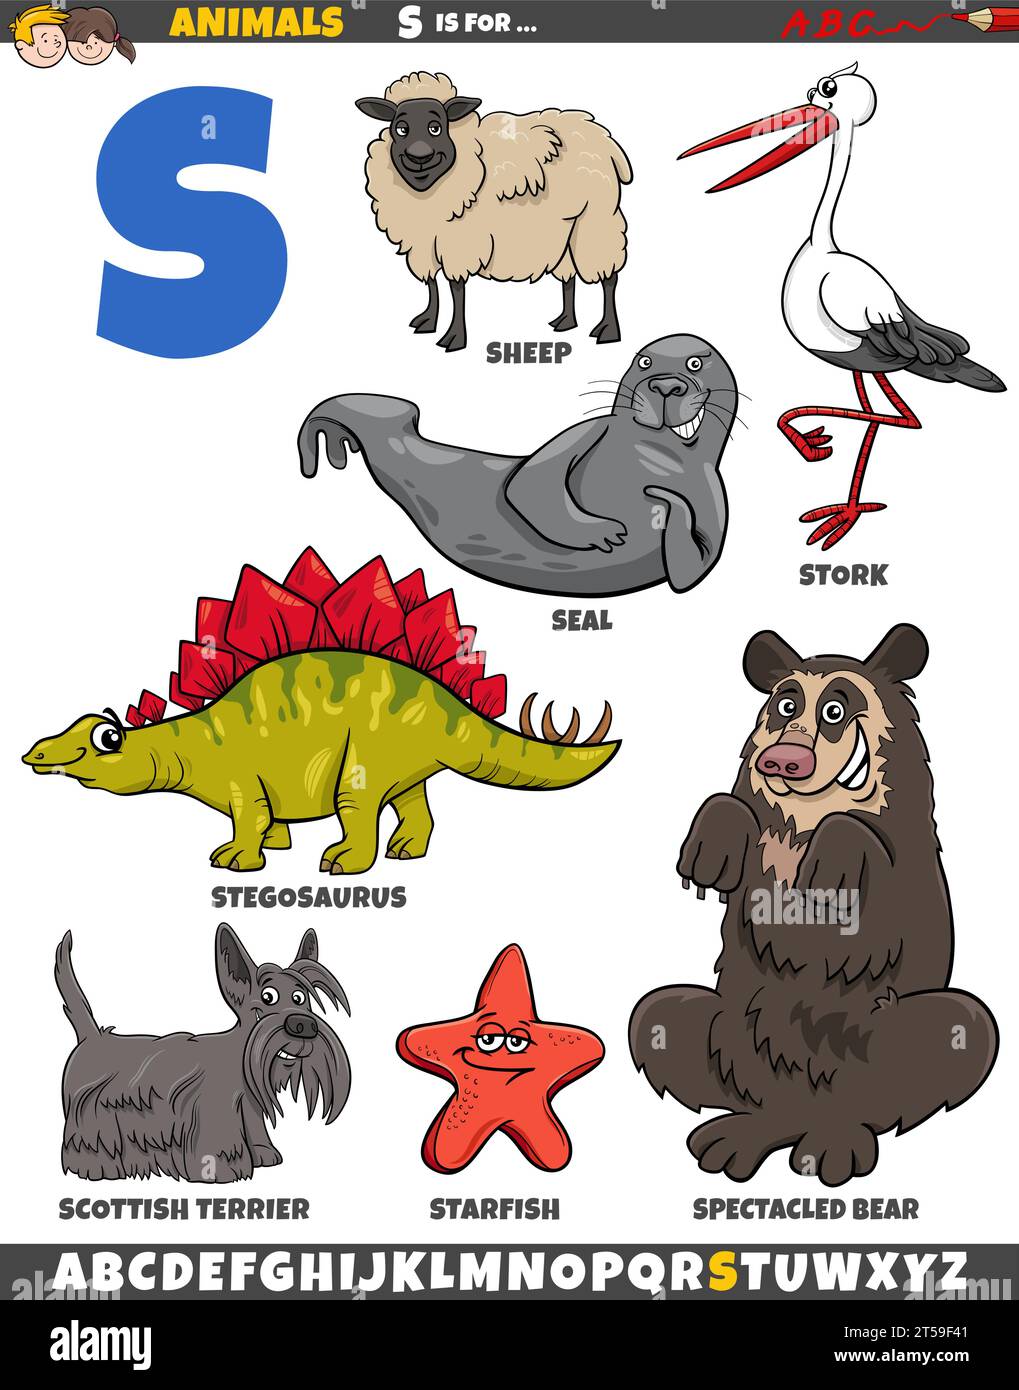 Zeichentrickillustration von Tierfiguren, die für den Buchstaben S gesetzt wurden Stock Vektor